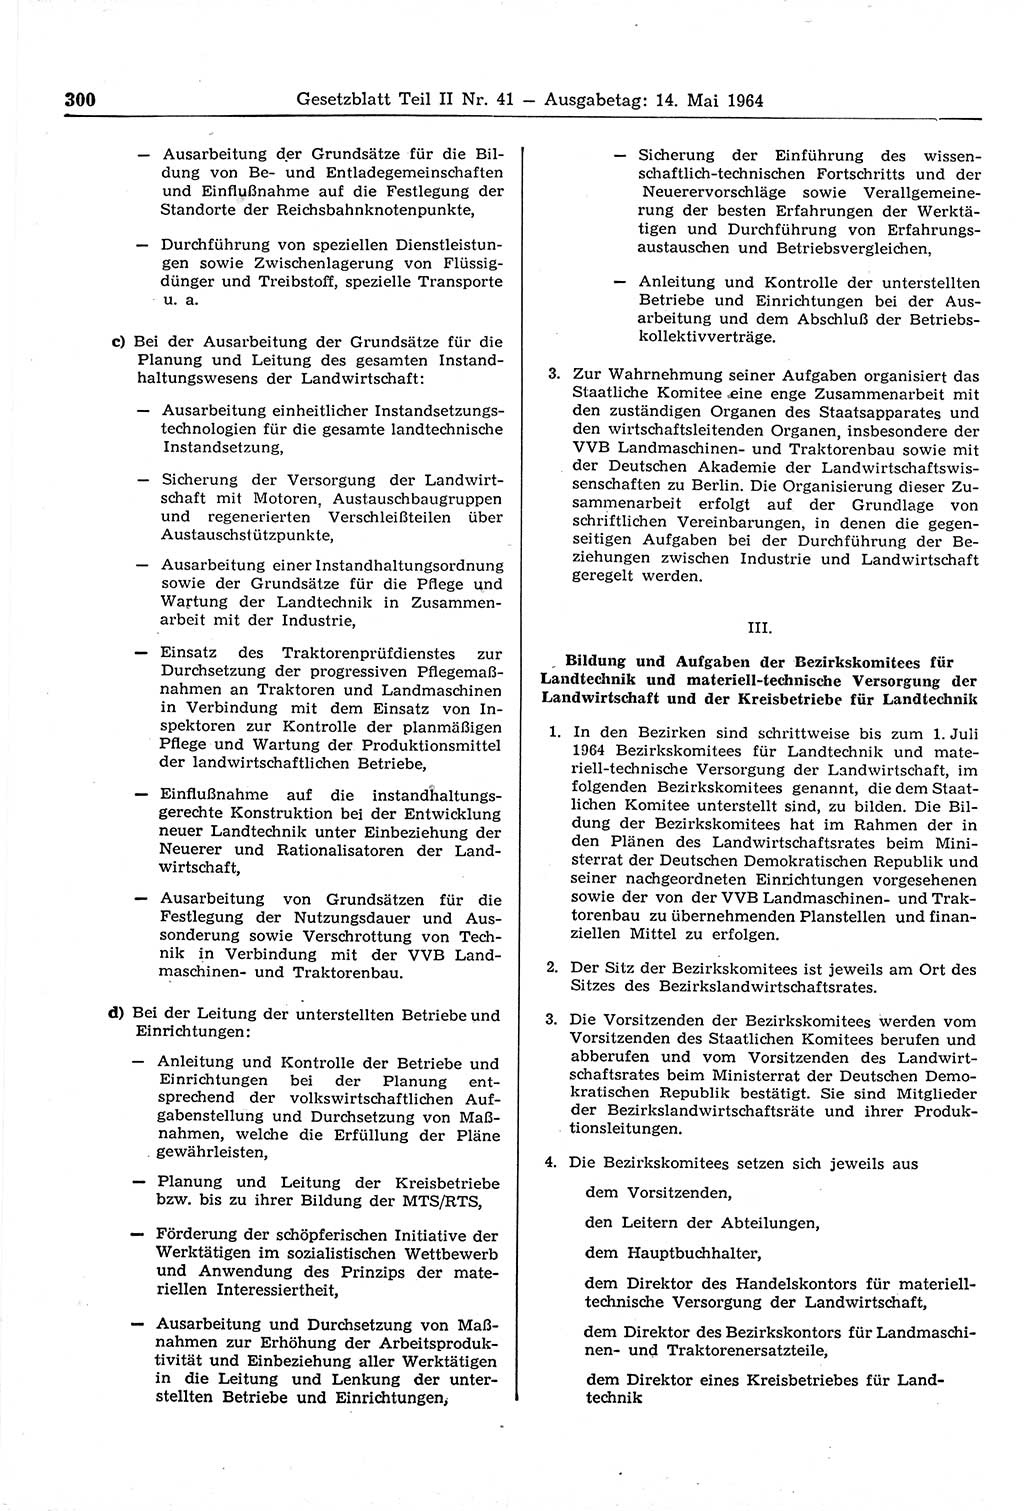 Gesetzblatt (GBl.) der Deutschen Demokratischen Republik (DDR) Teil ⅠⅠ 1964, Seite 300 (GBl. DDR ⅠⅠ 1964, S. 300)